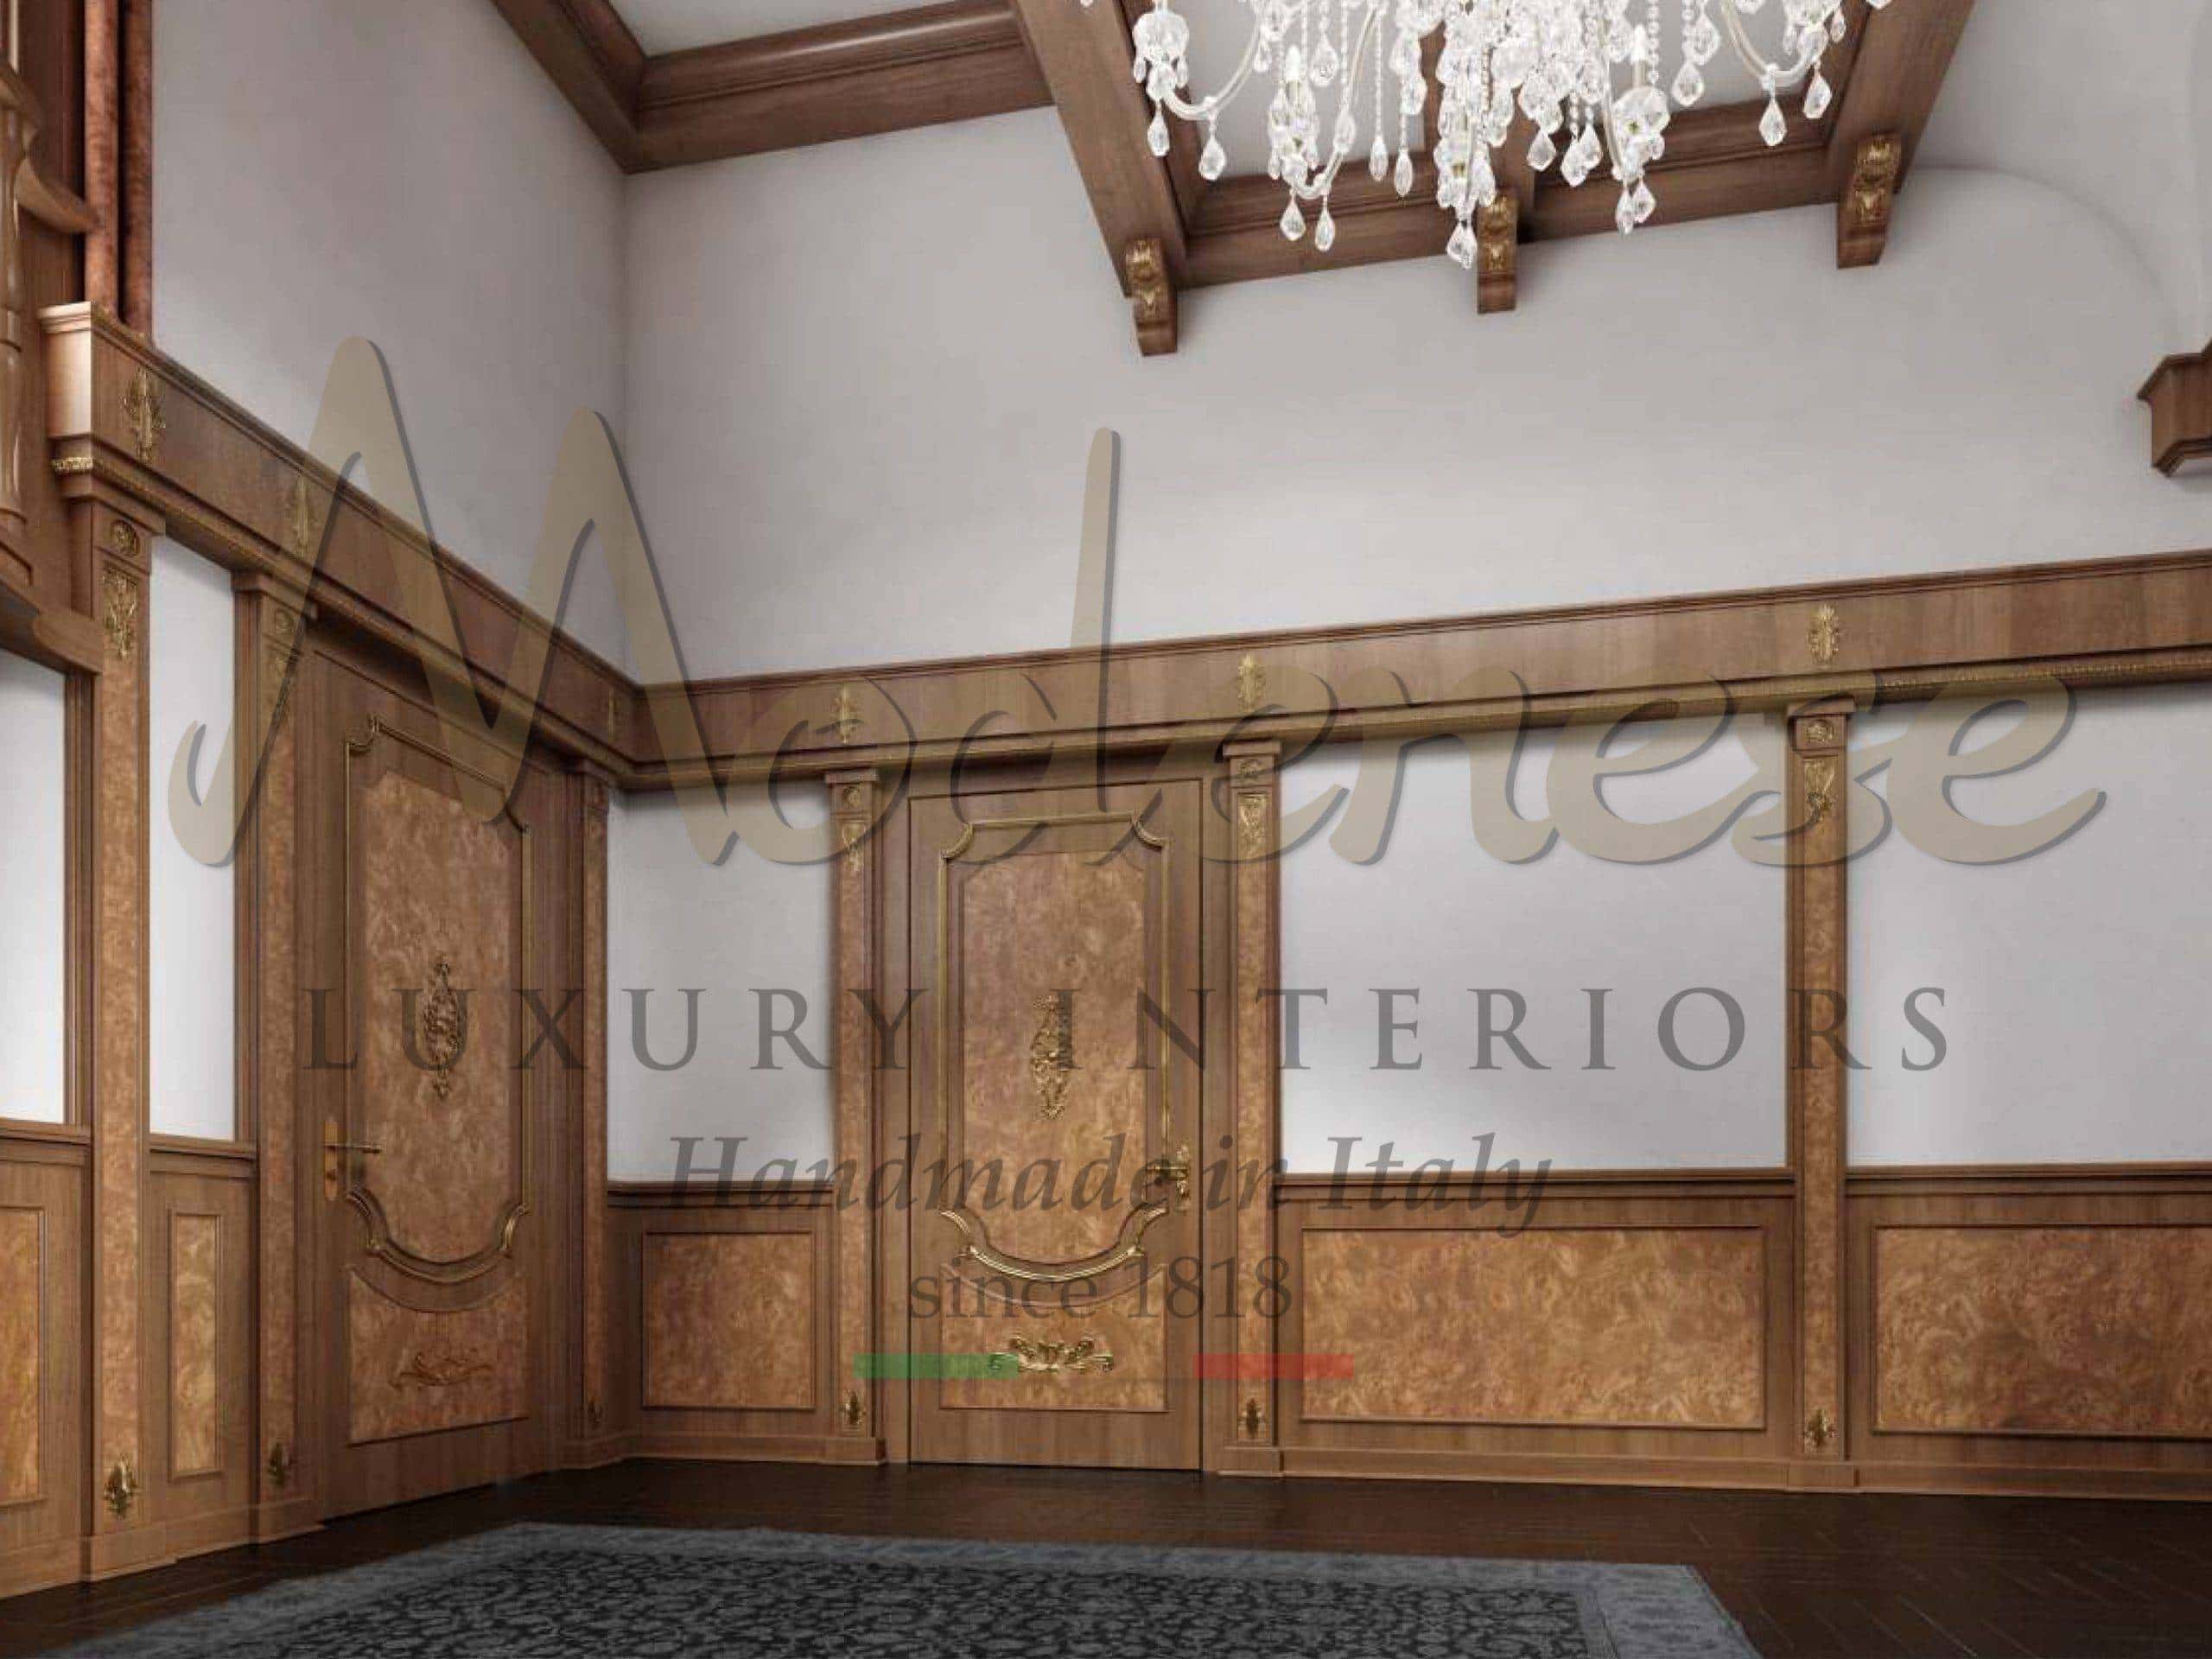 تصميم داخلي فاخر مصنوع في إيطاليا على طريقة لامبريس بالألواح الخشبية خصيصًا لتزيين جدران بأفضل الحلول للفيلات الحصرية الملكية والقصور بمشاريع تصميمية داخلية التقليدية.